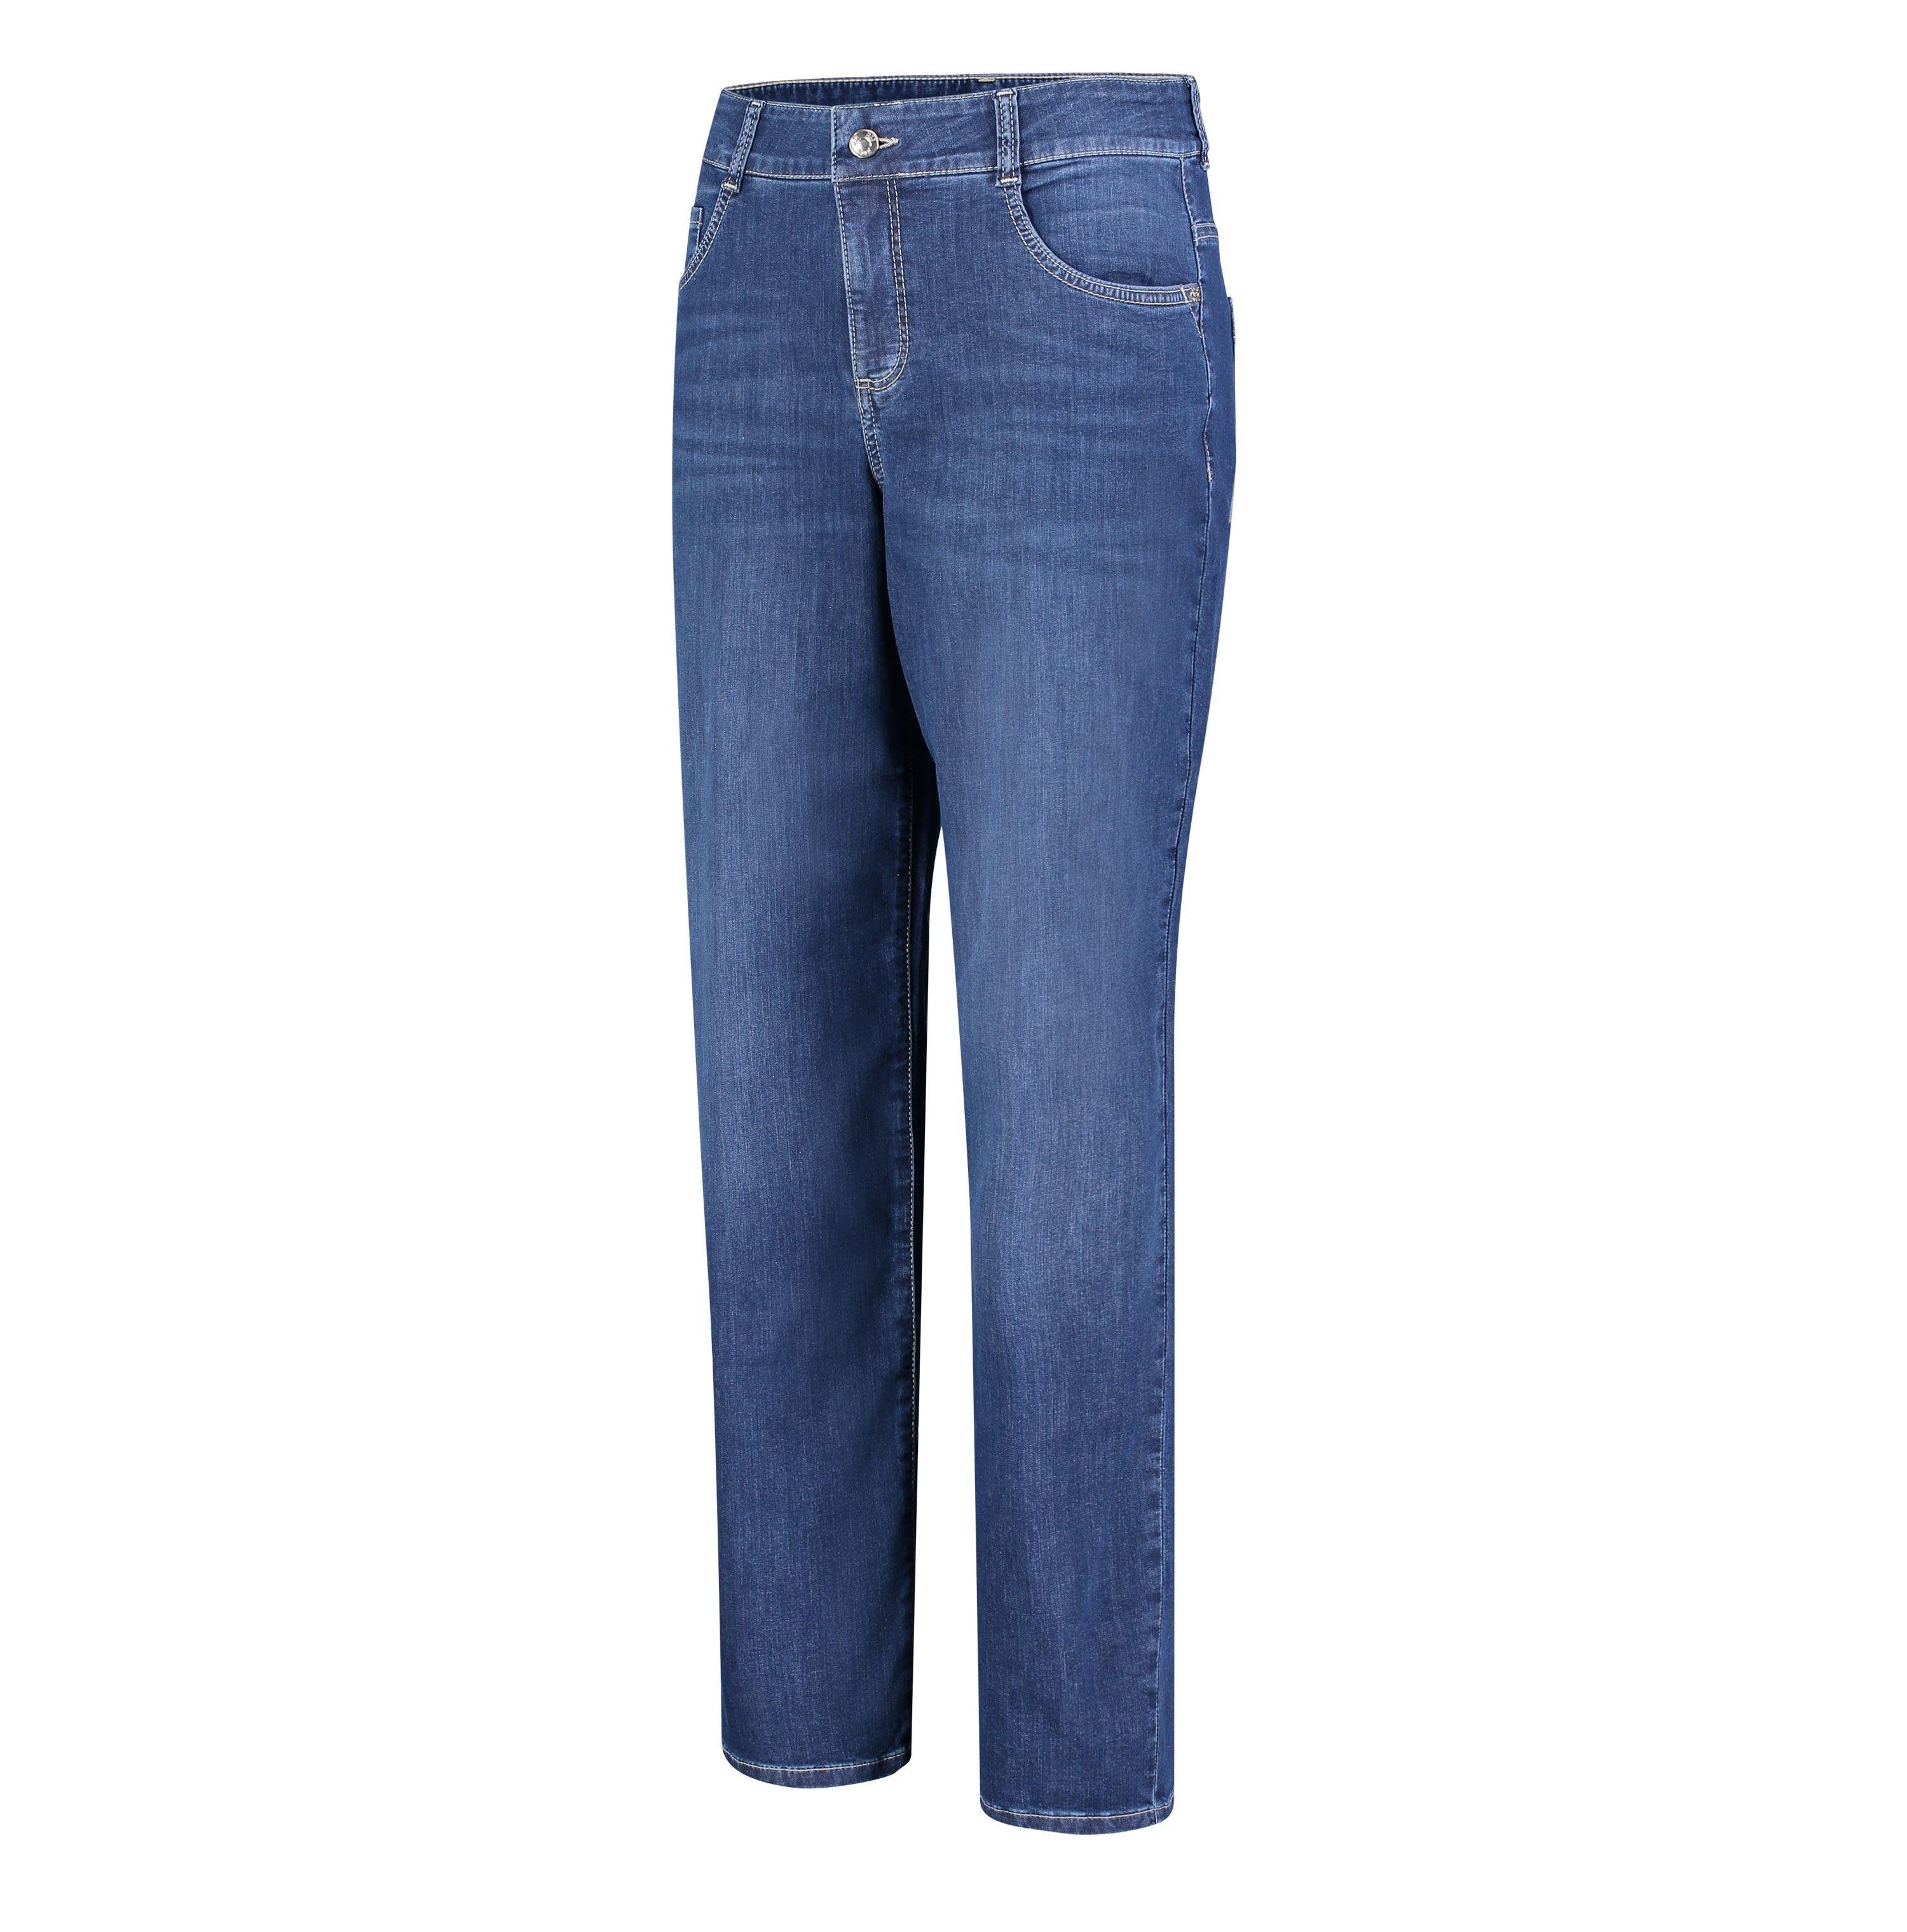 GRACIA D883 wash MAC Stretch-Jeans basic 5381-90-0391 MAC blue dark